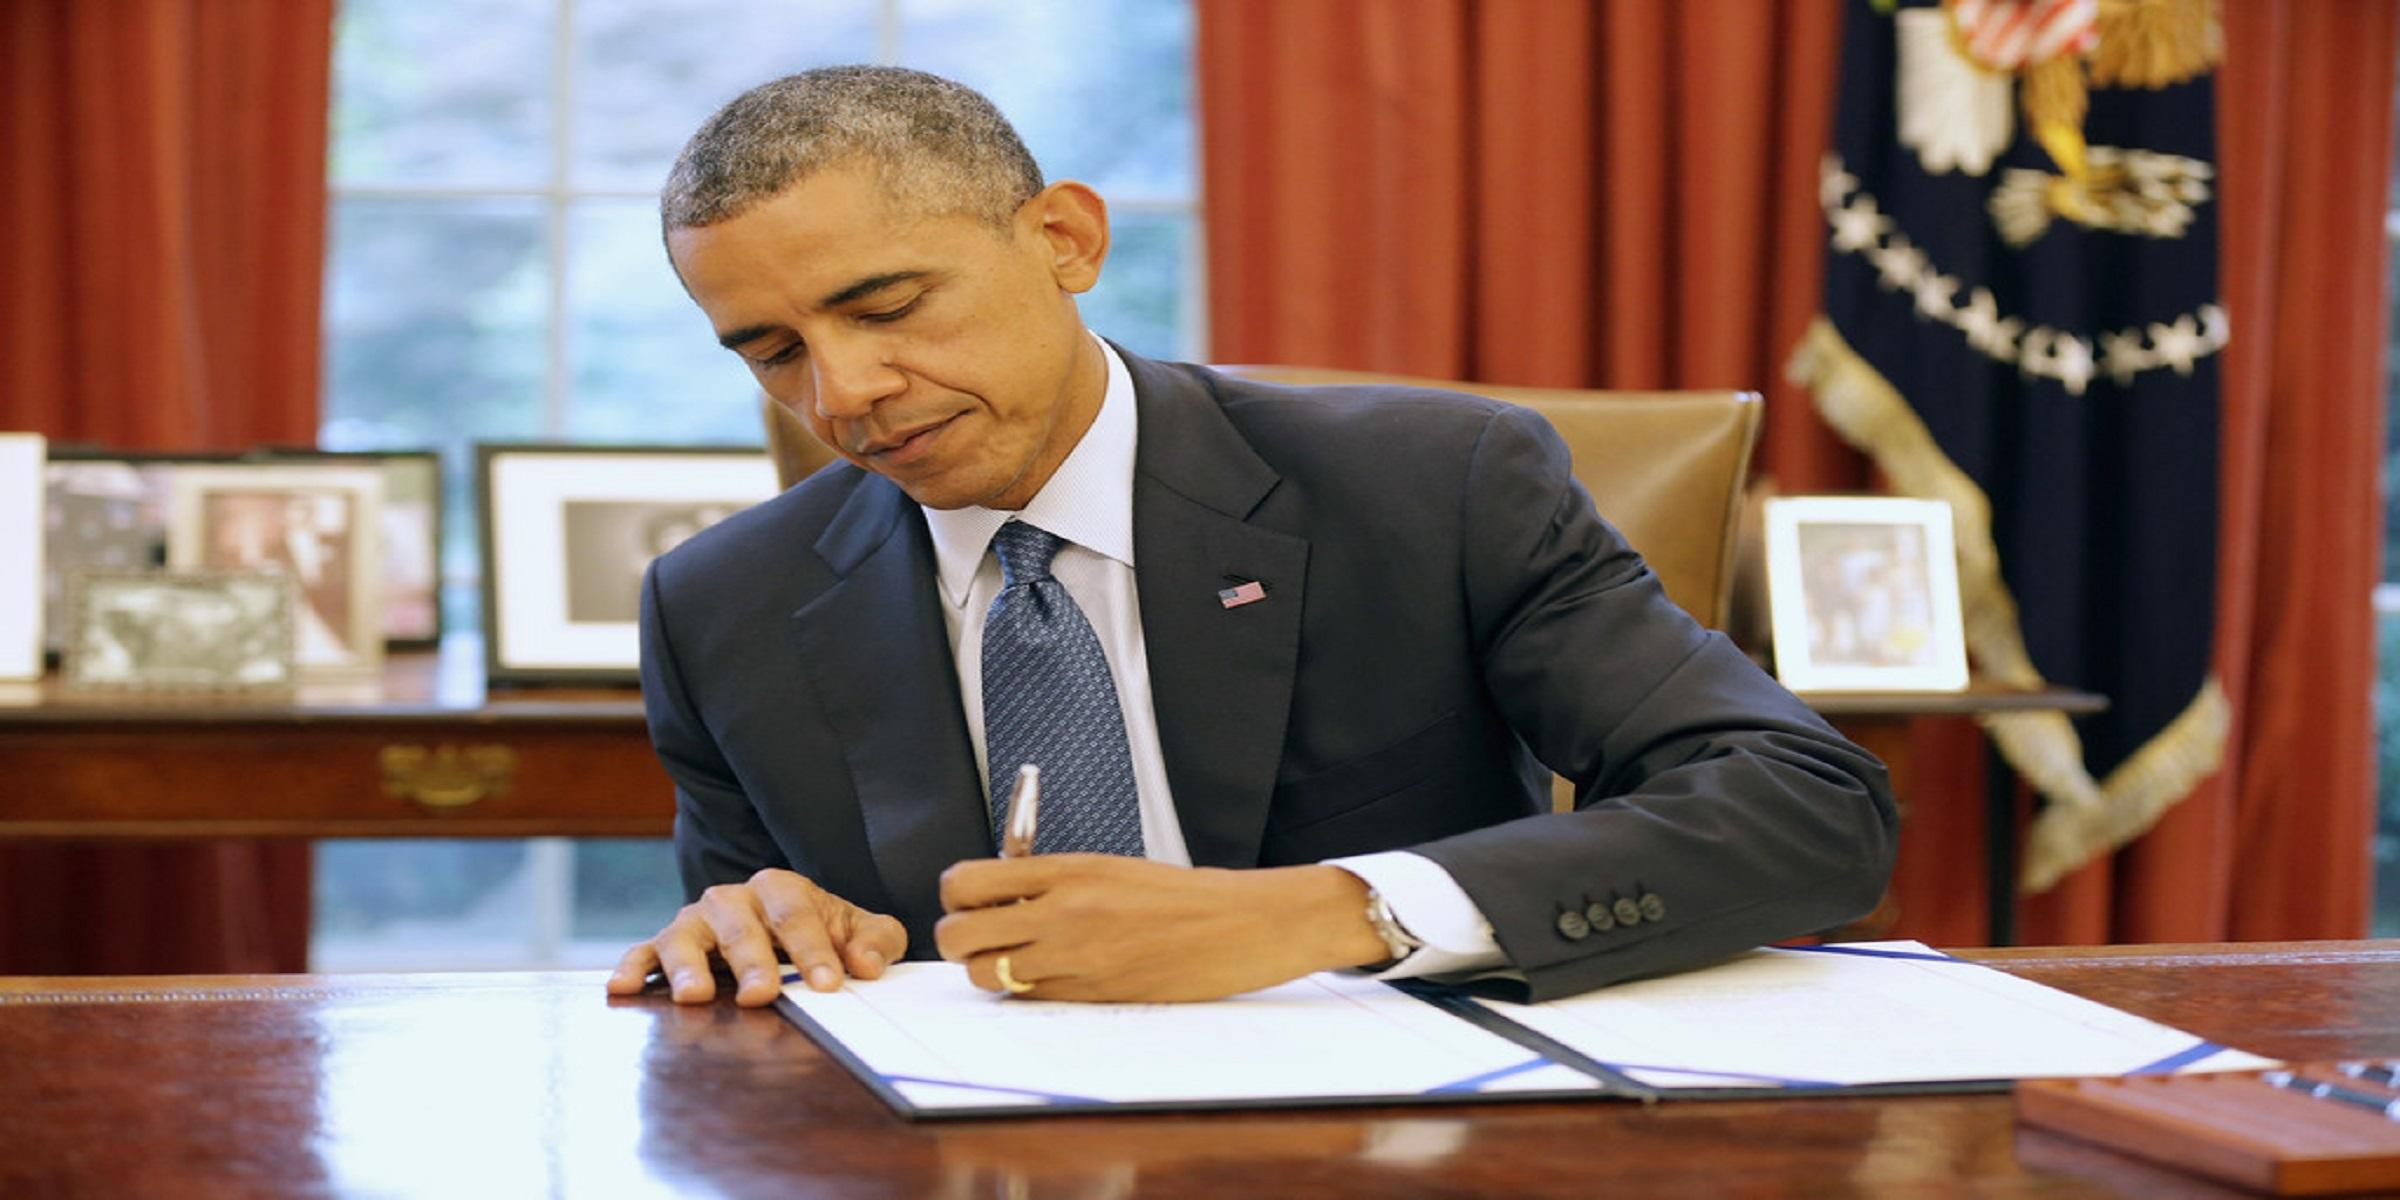 President Obama signing proclamation